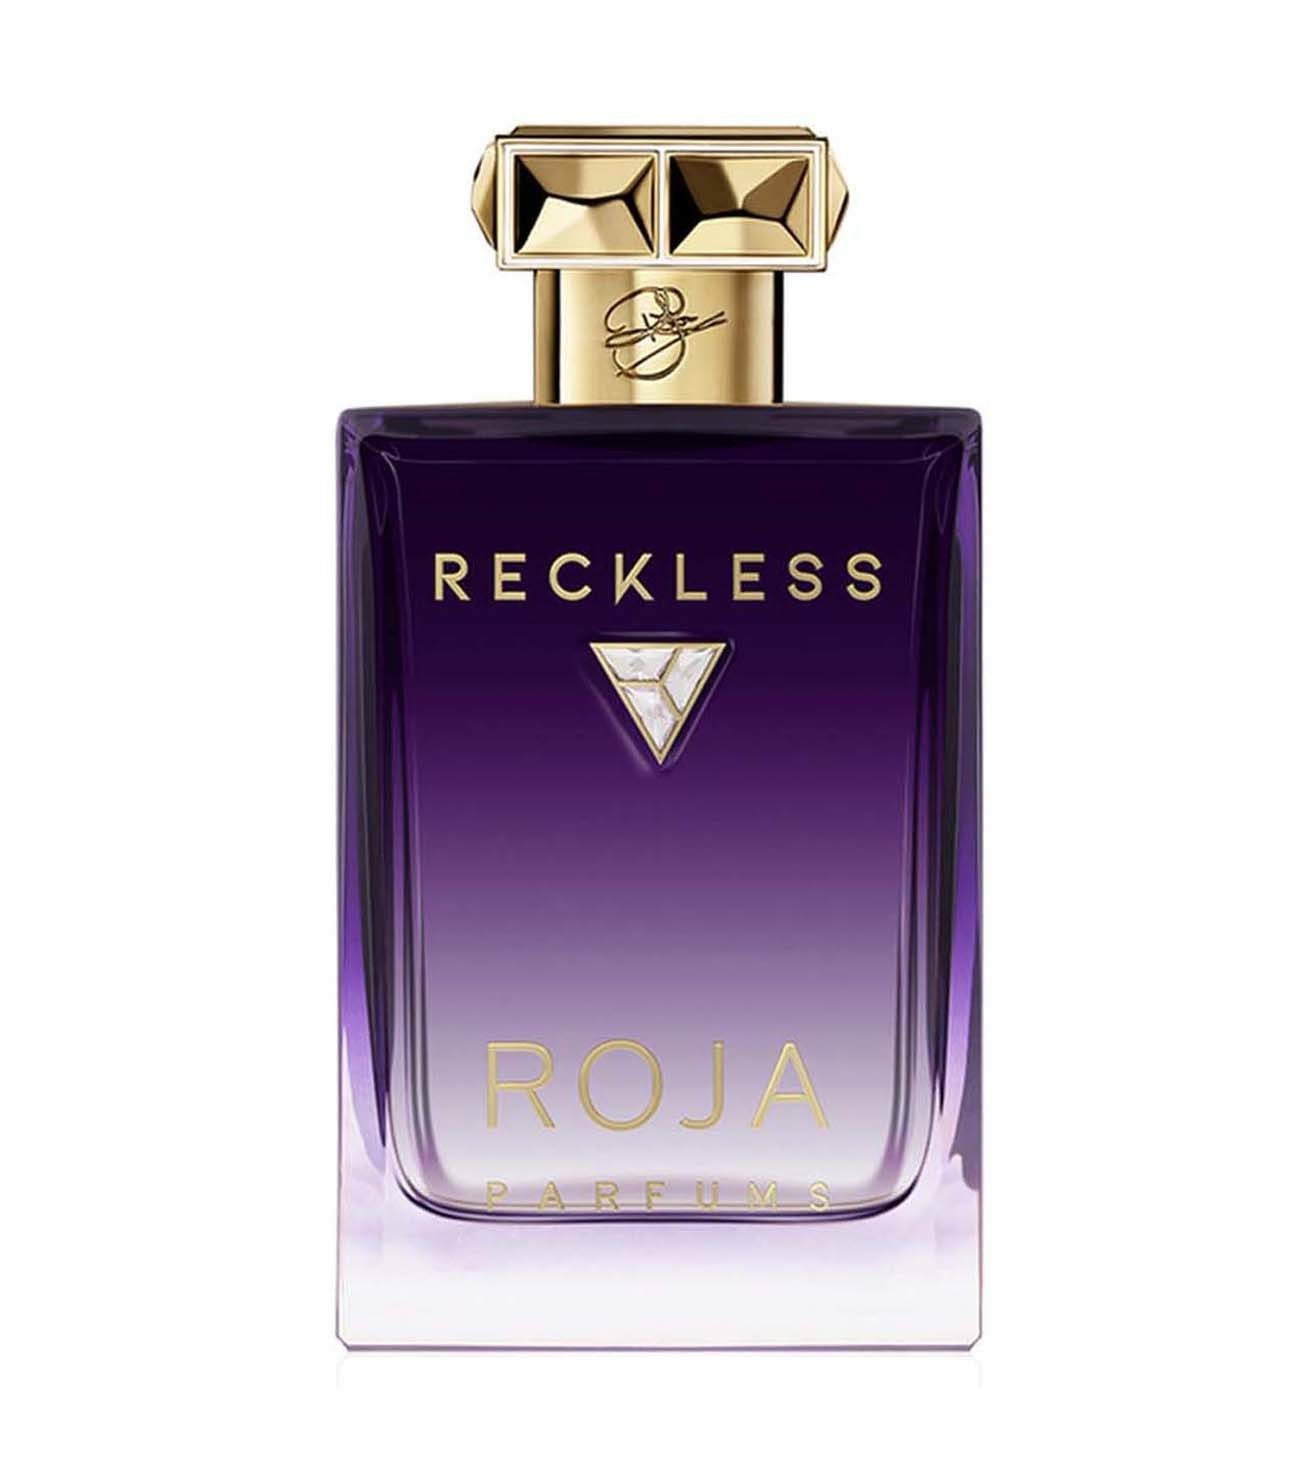 Roja - Reckless Essence de Parfum